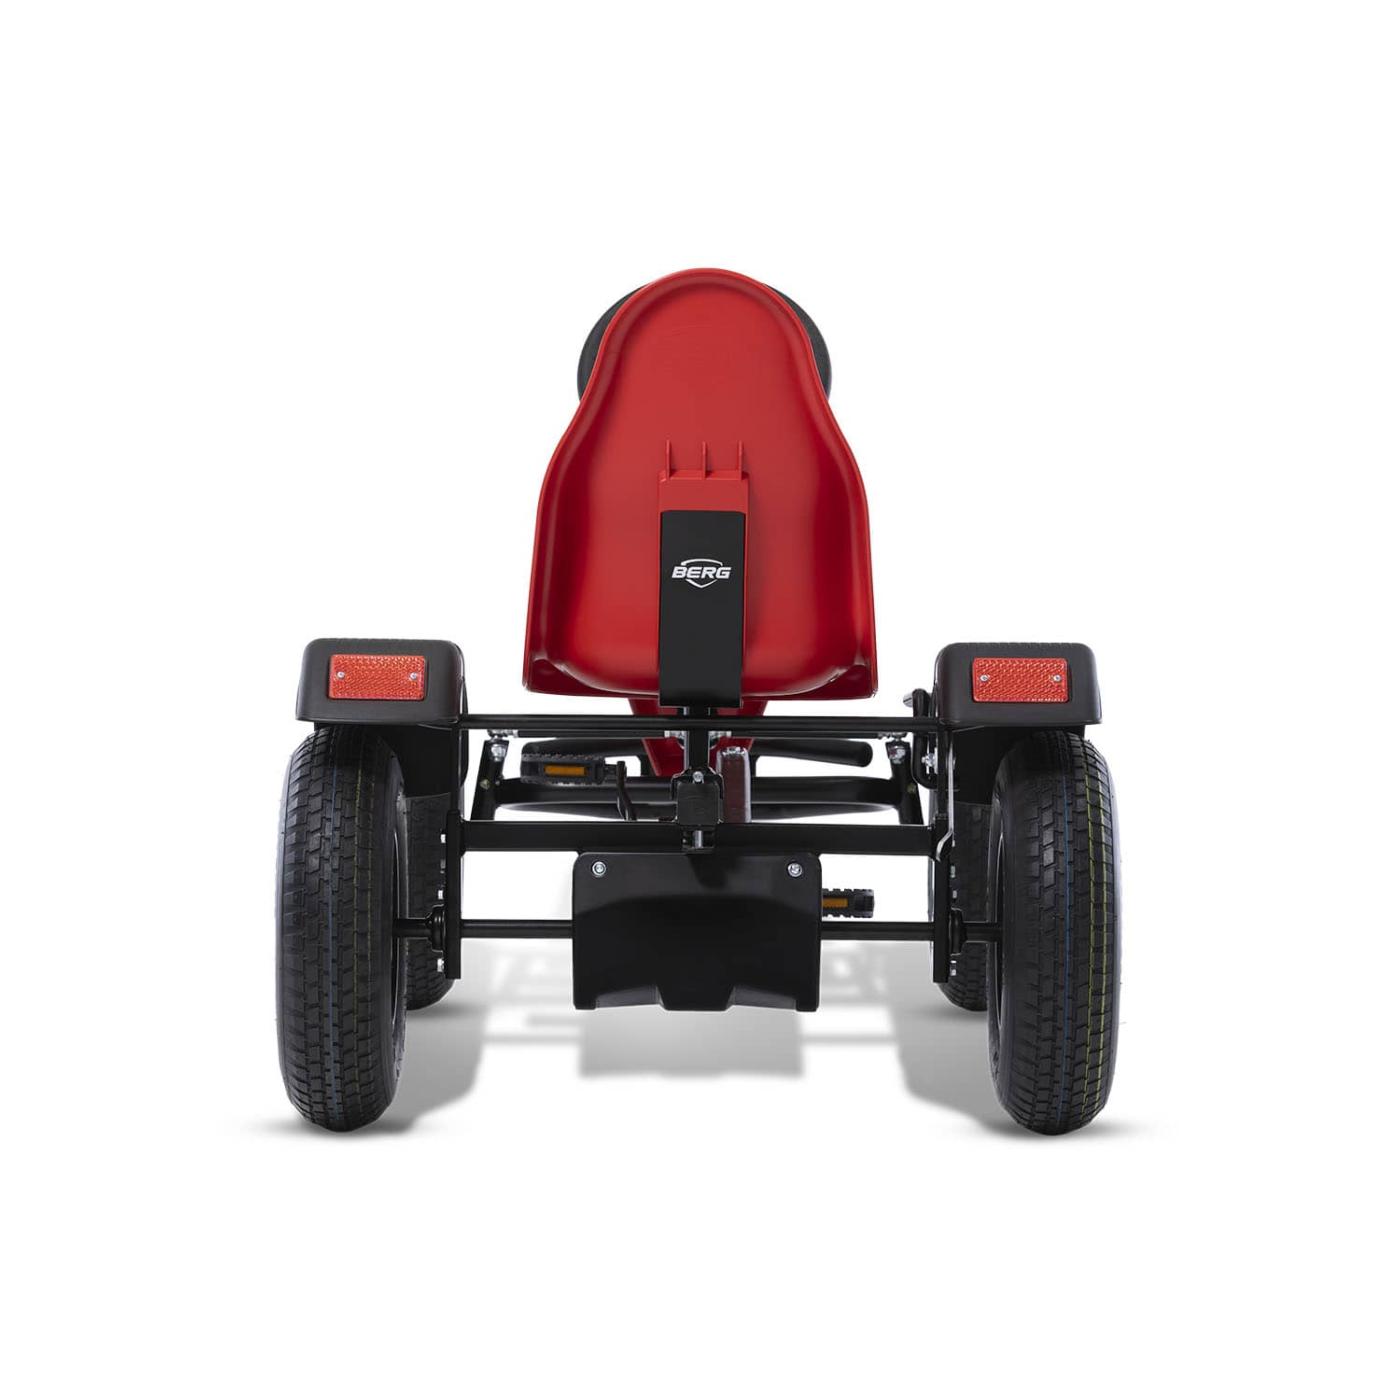 kart a pedal eléctrico BERG XXL B.Super Red E-BFR